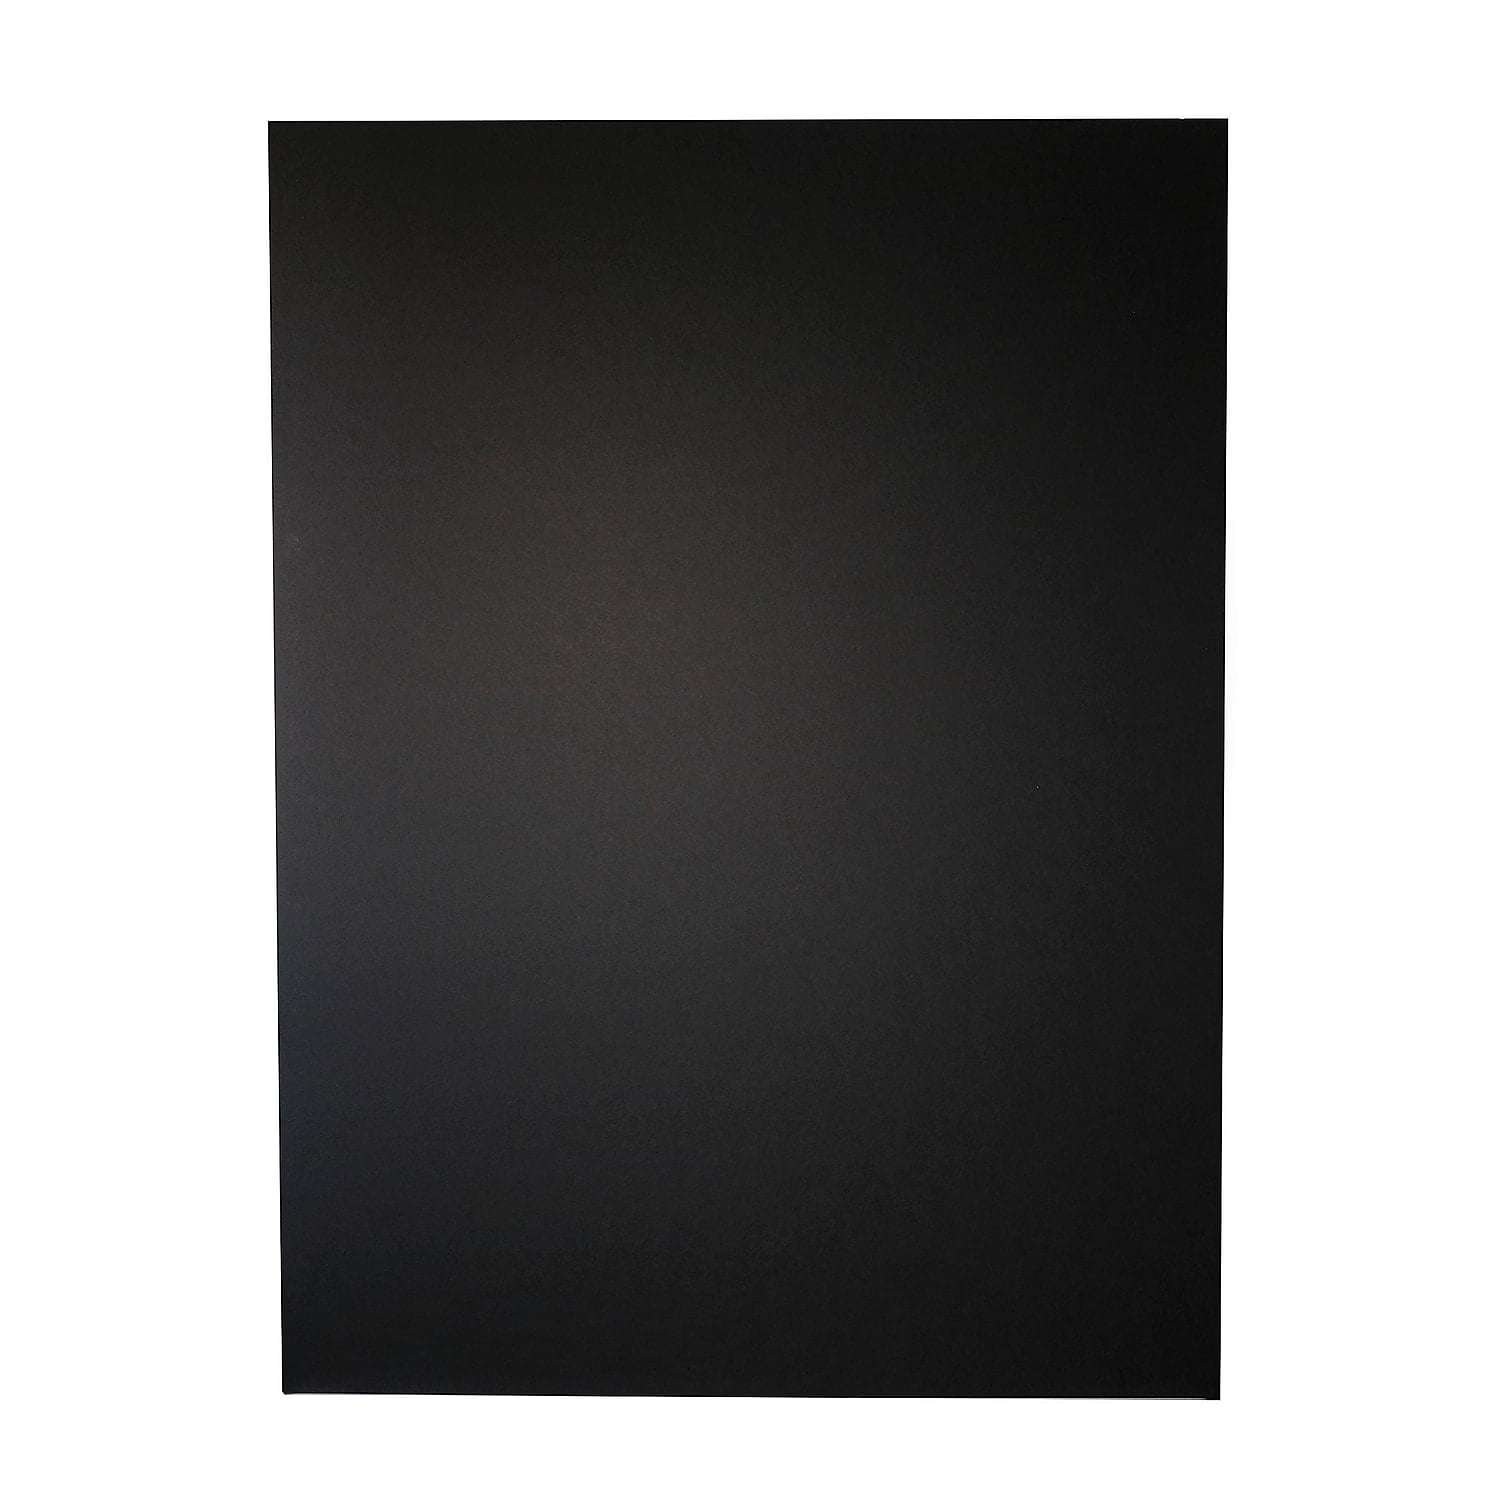 Elmer's Black-on-Black Foam Board, 24x36